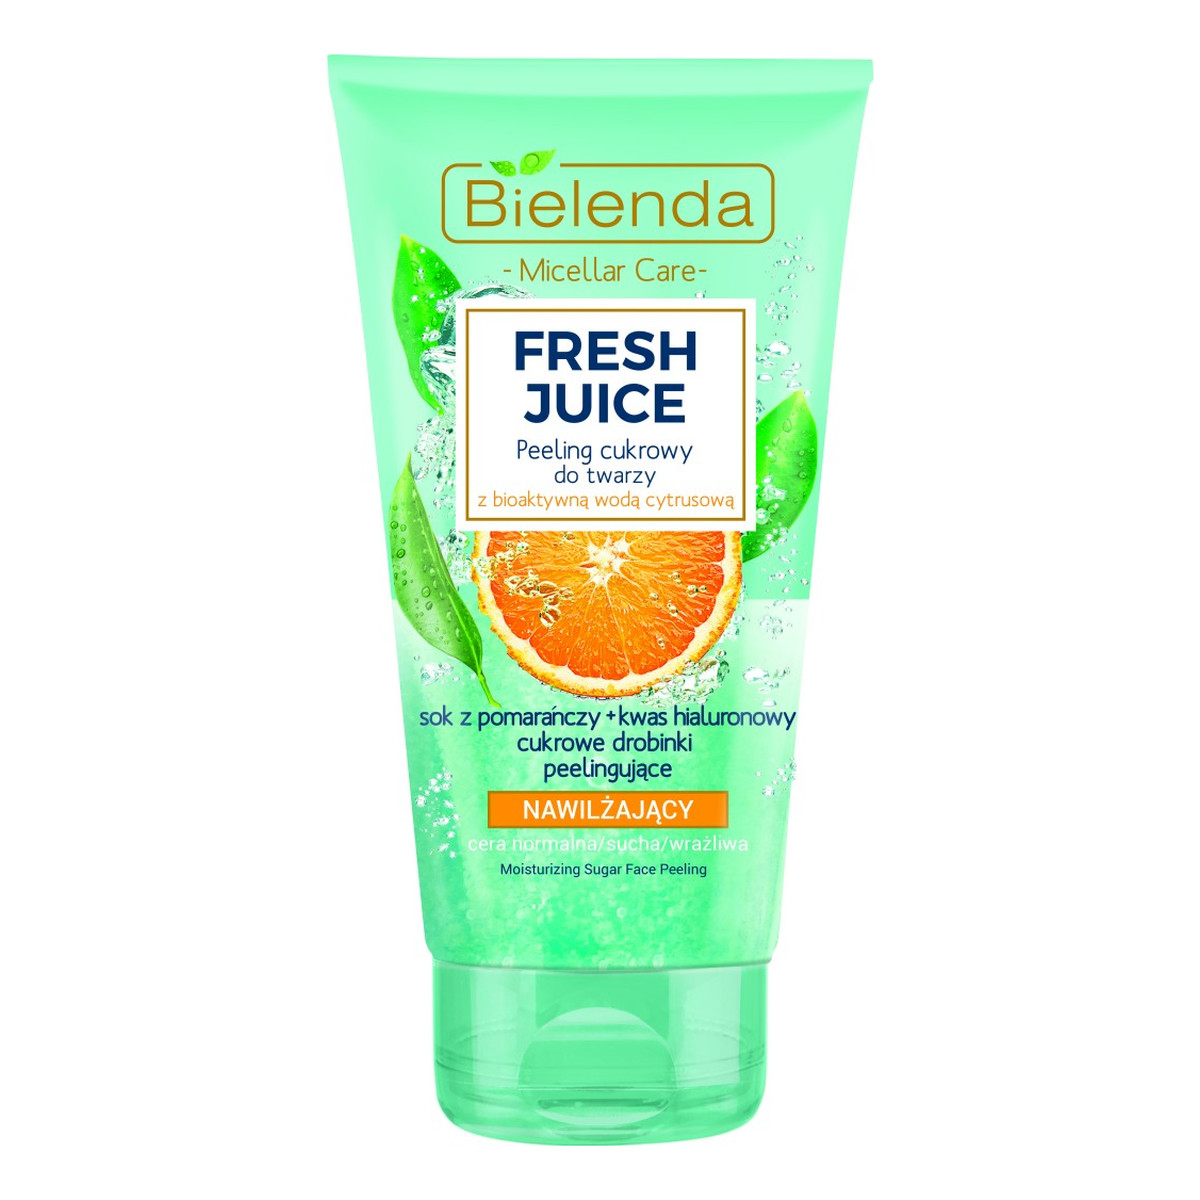 Bielenda Fresh Juice Pomarańcza nawilżający peeling cukrowy do twarzy 150g